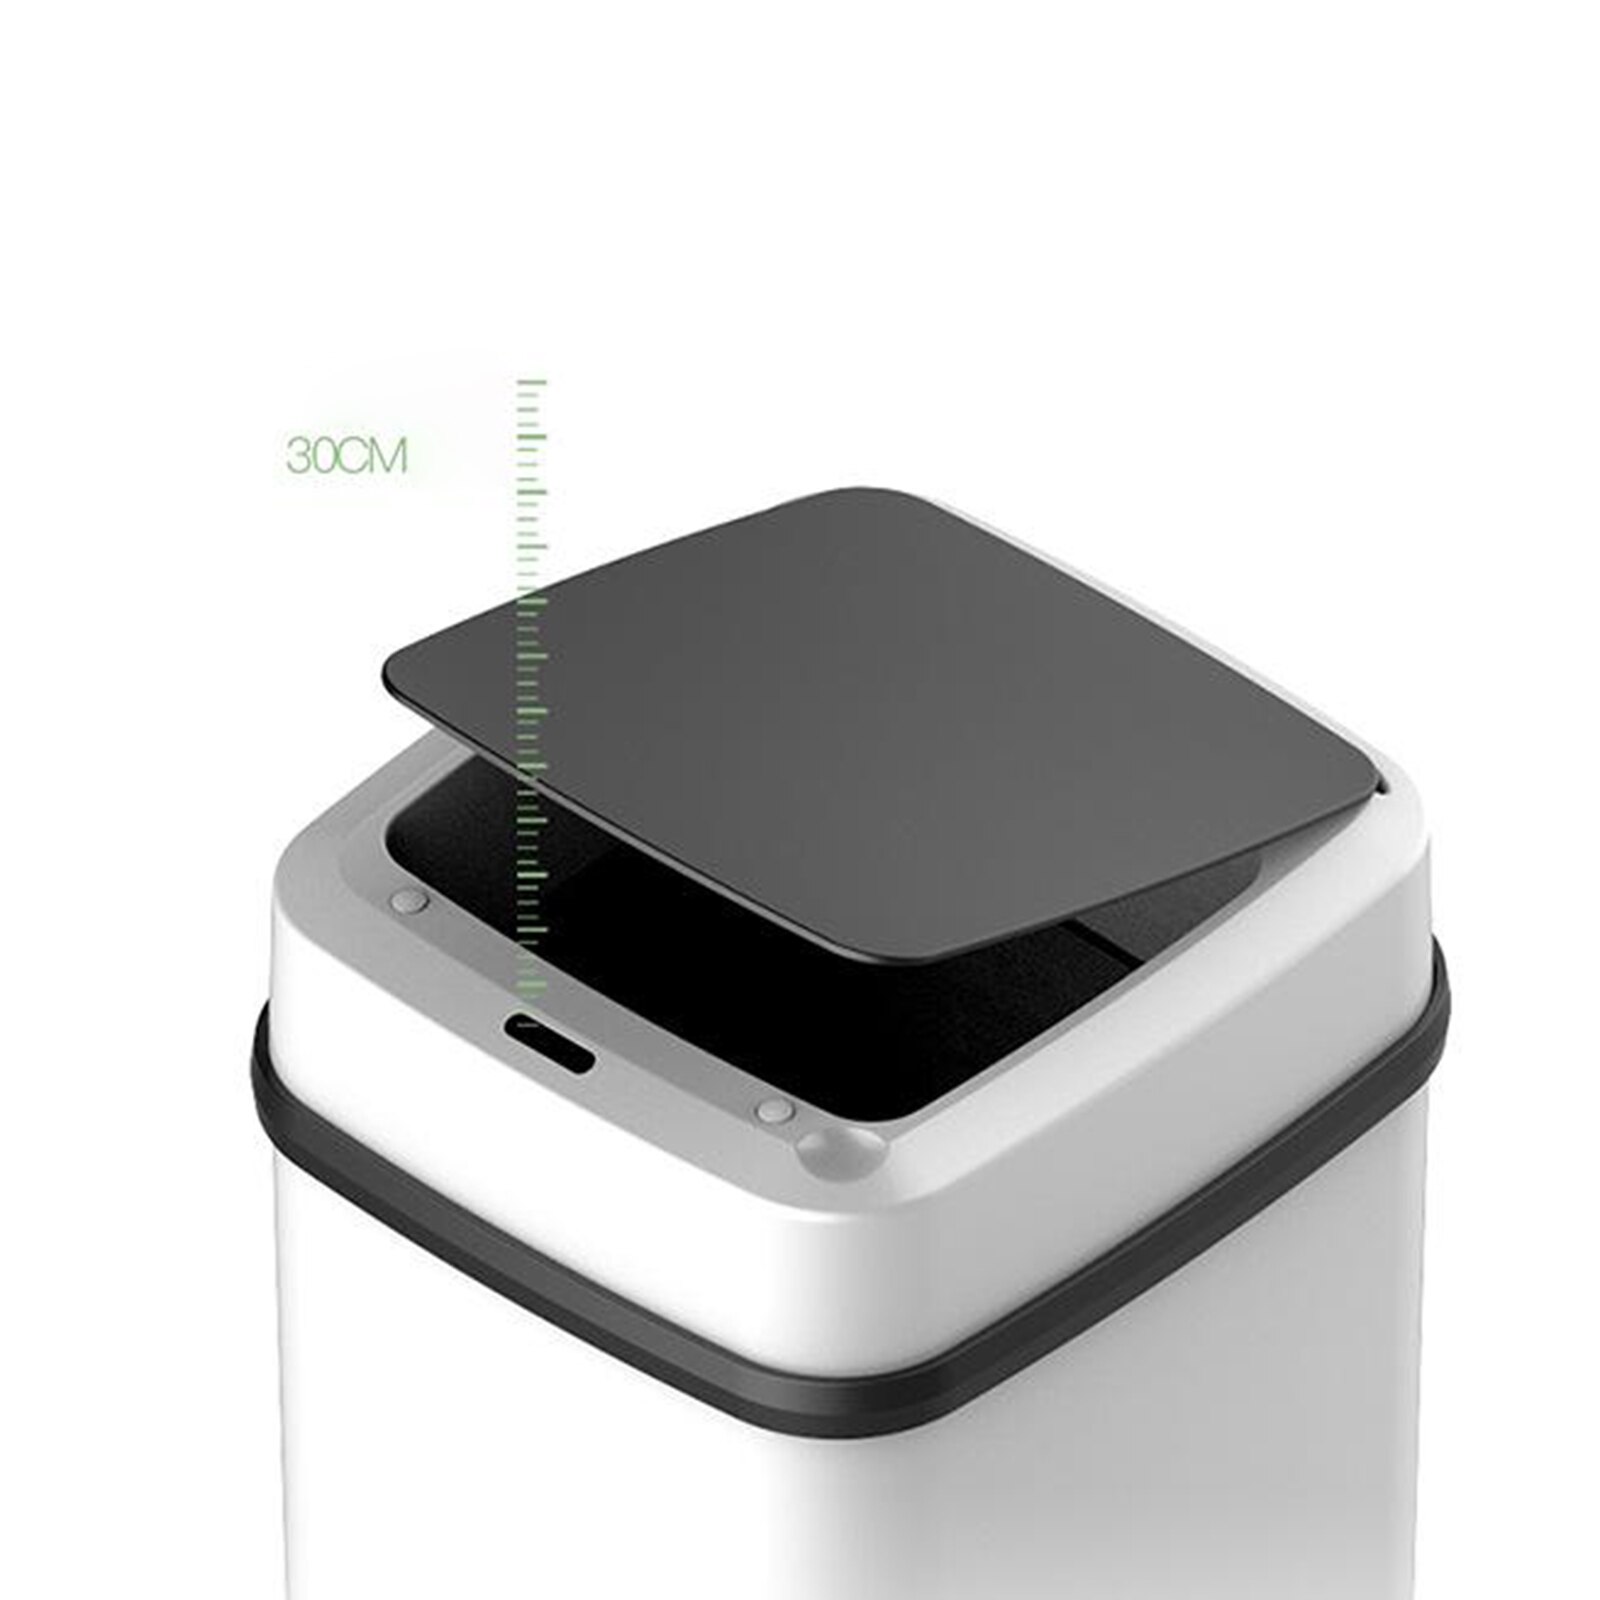 12L Smart Prullenbak Automatische Inductie Vuilnisbak Infrarood Sensor Afvalbak Voor Keuken Badkamer Home Intelligente Vuilnisbak